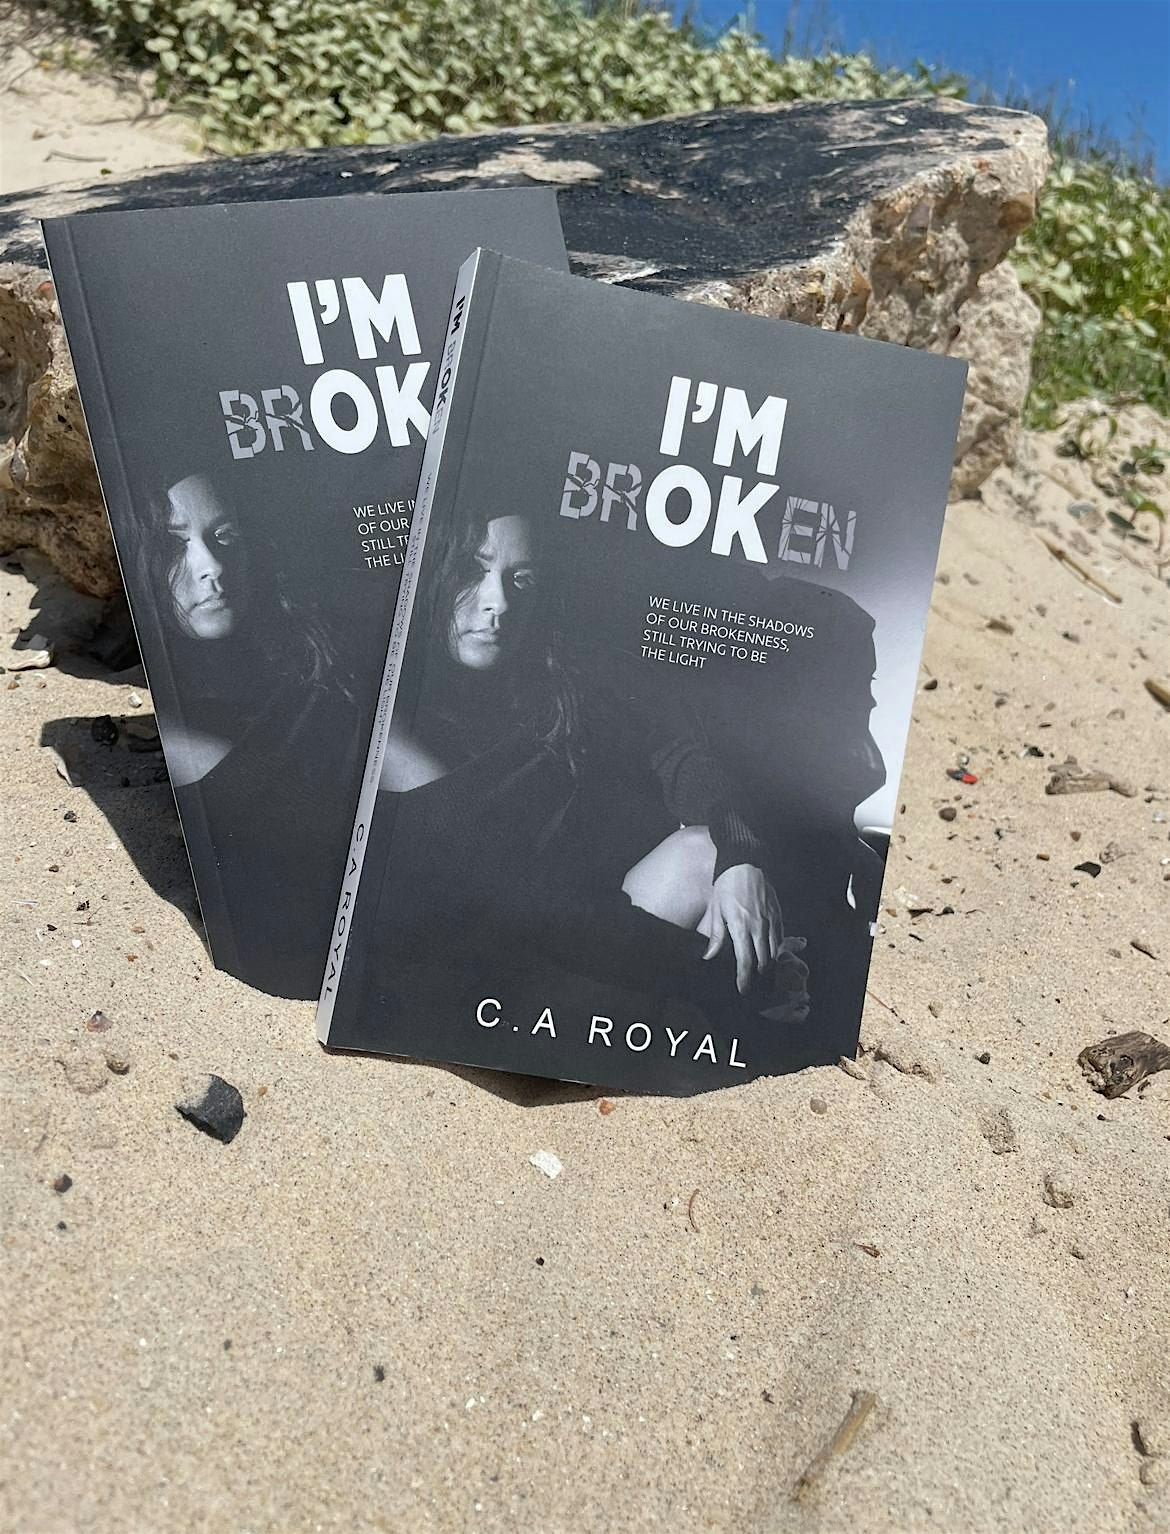 Book Launch - Part One of the memoir "I'm brOKen"